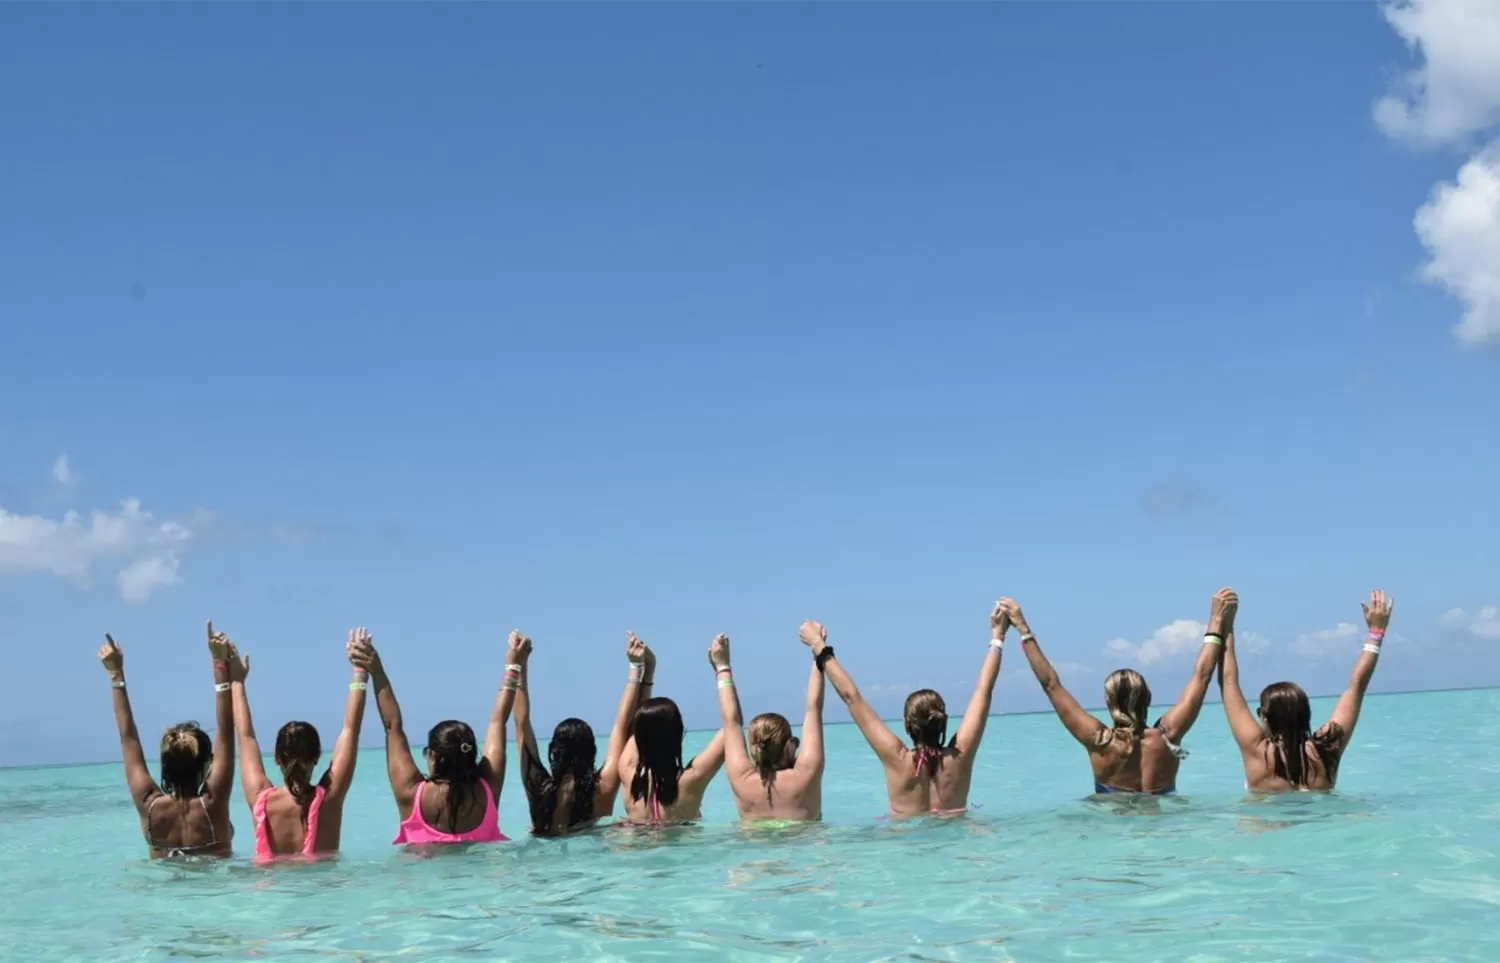 EN PUNTA CANA. Janet Pujol viajó con sus amigas República Dominicana, donde el mar es increíble, y se tomaron esta foto.